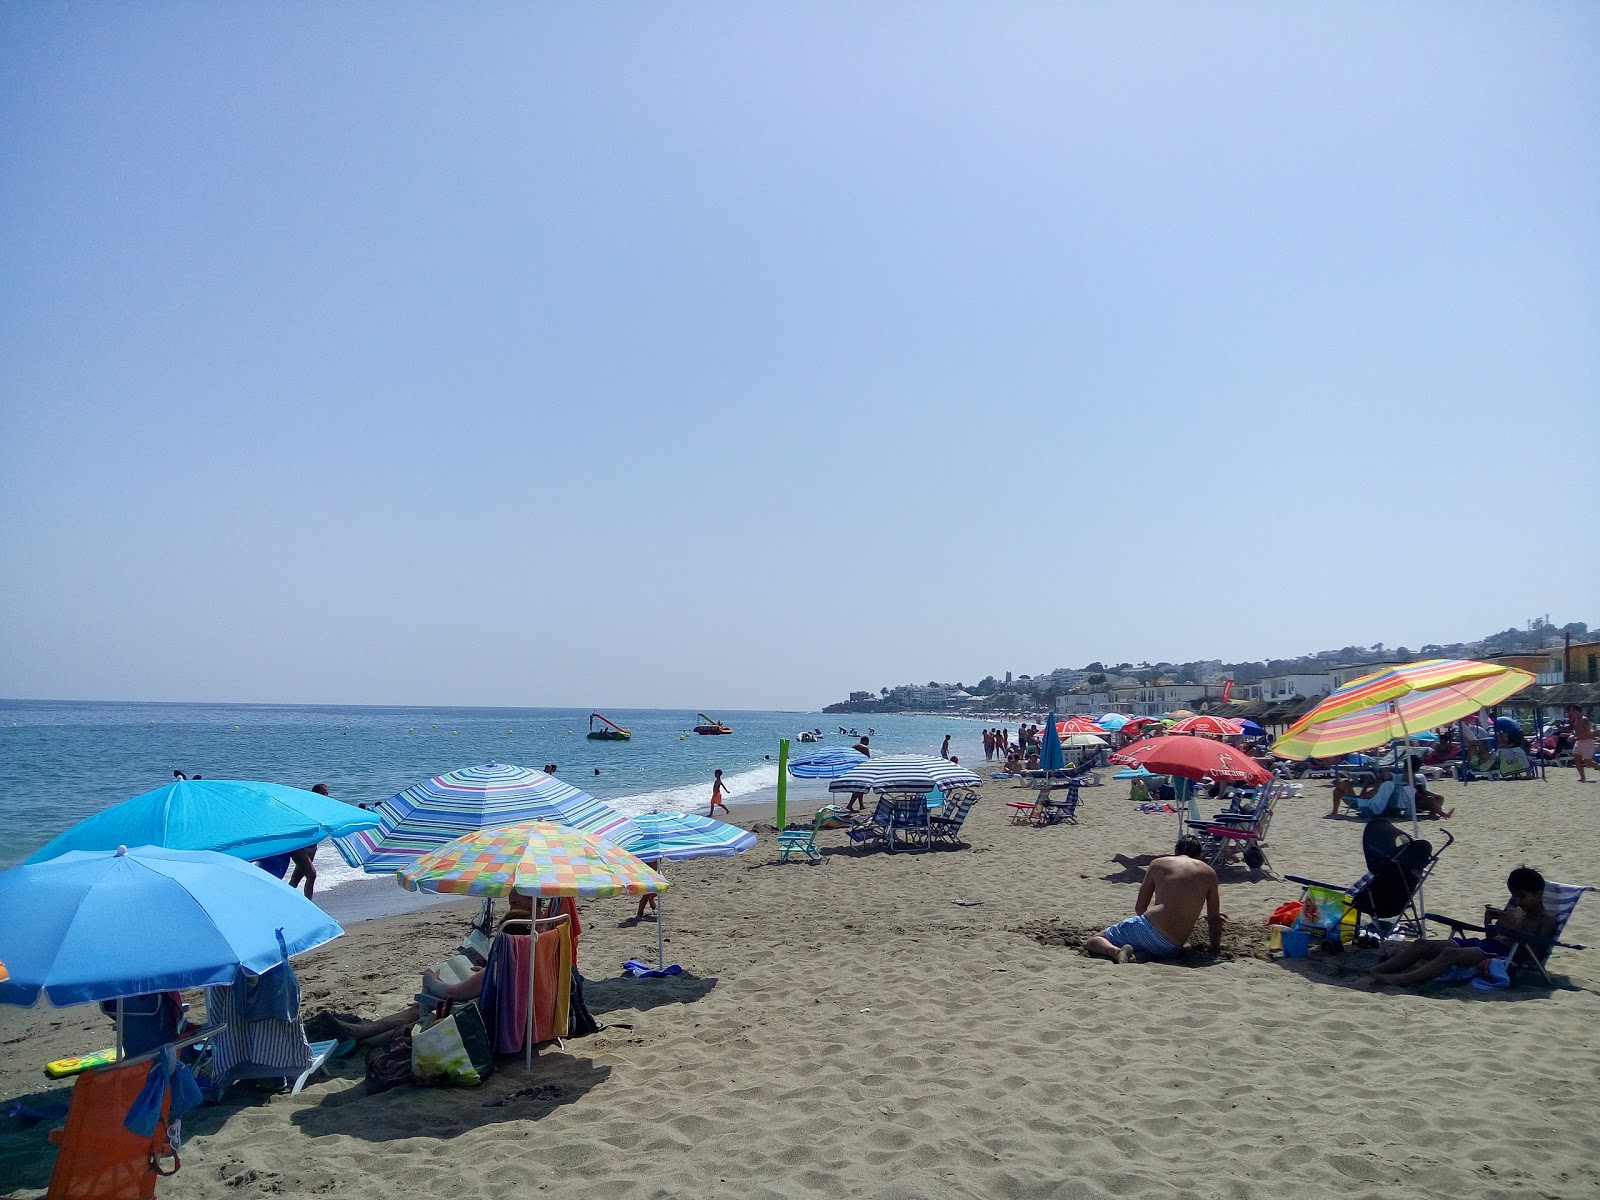 la Cala de Mijas'in fotoğrafı geniş plaj ile birlikte